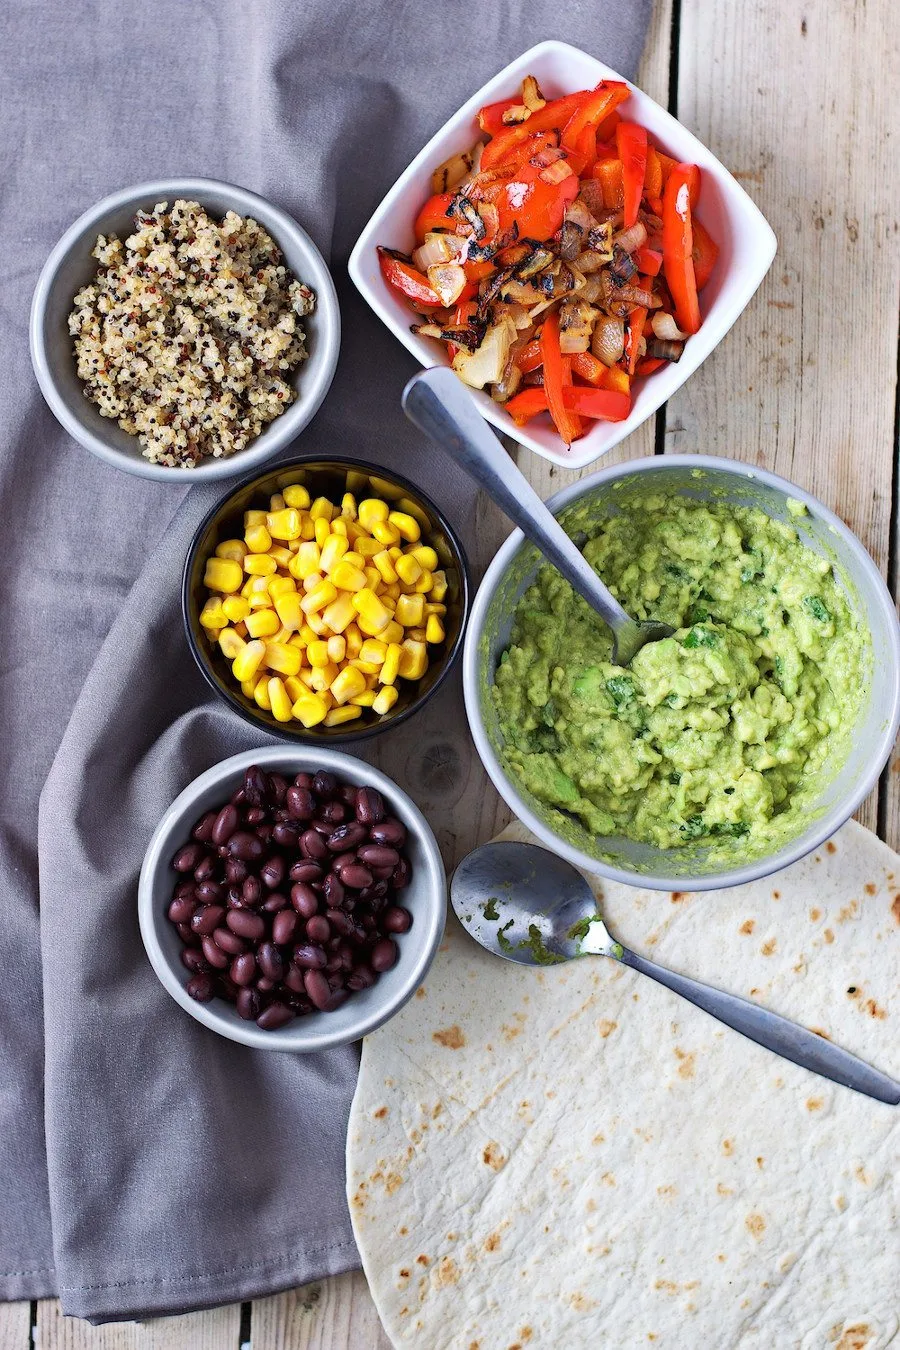 Good To-Go Mexican Quinoa Bowl-Single Serving 3.4 oz